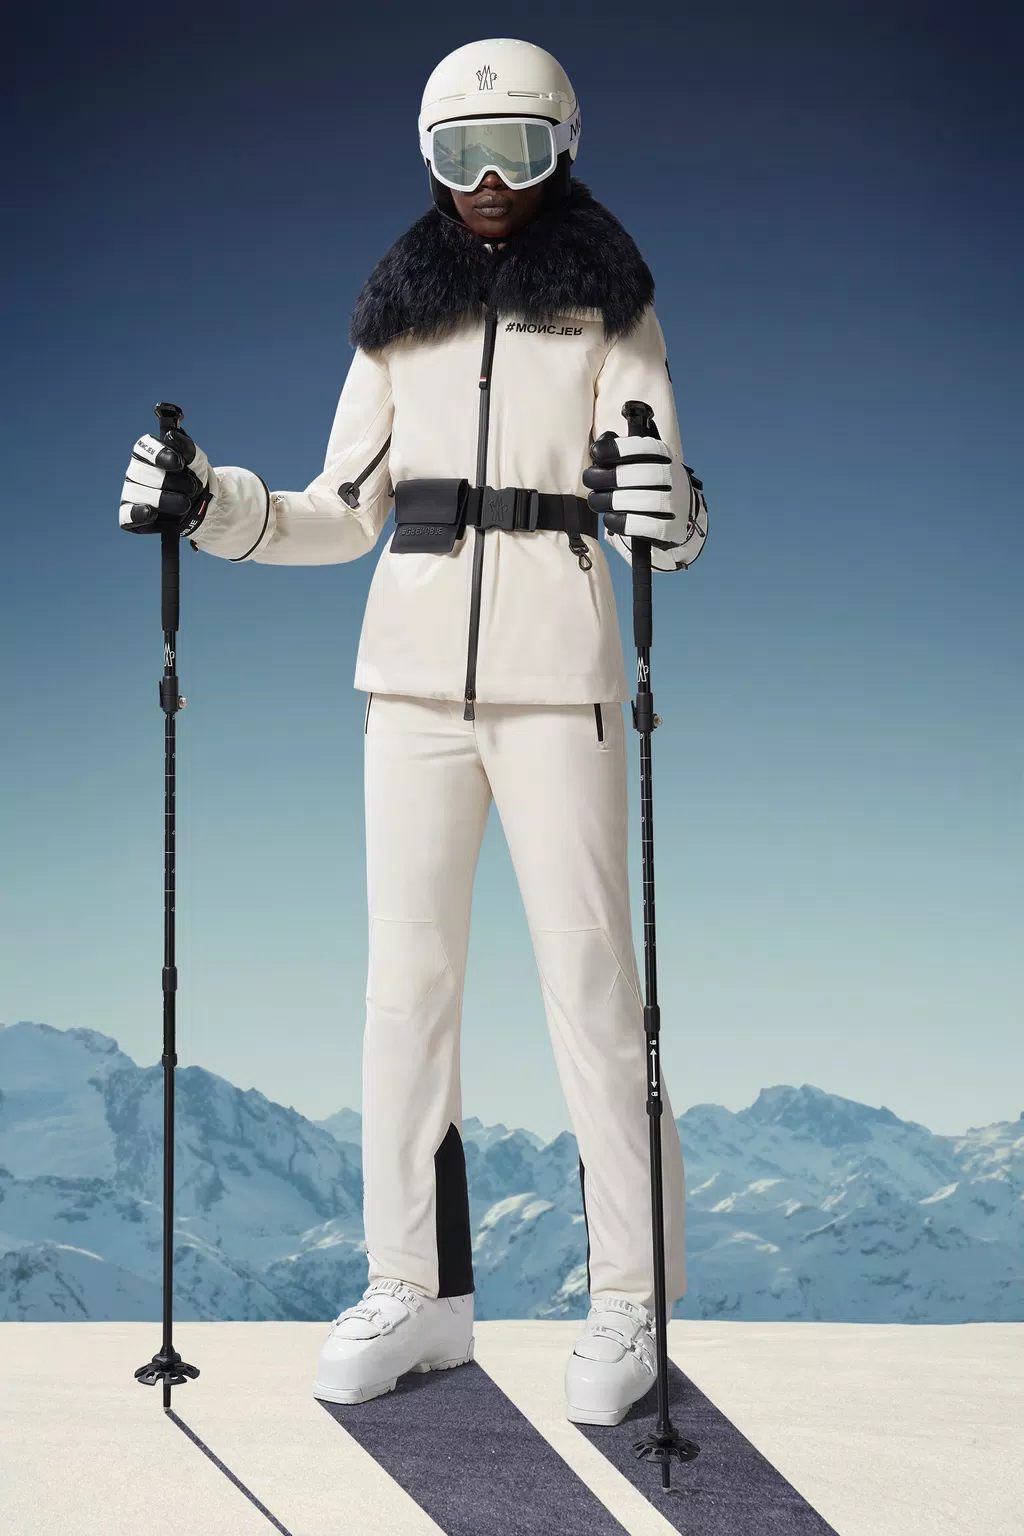 Ropa de Esquí Mujer - la colección de ropa de nieve